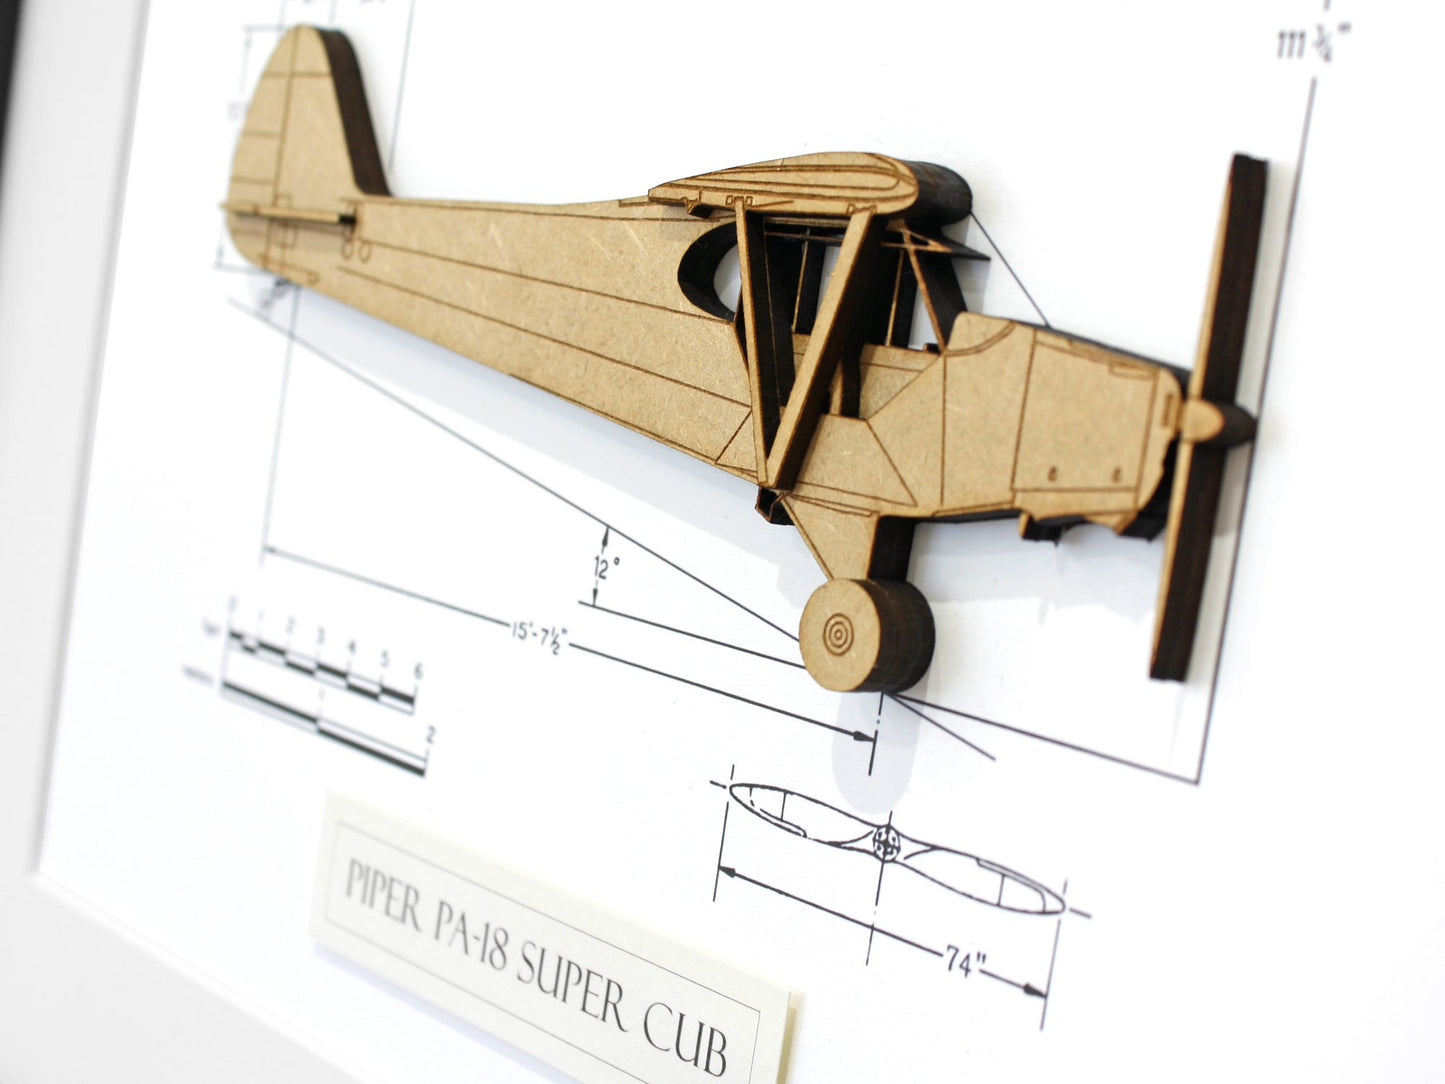 Piper Super Cub blueprint art